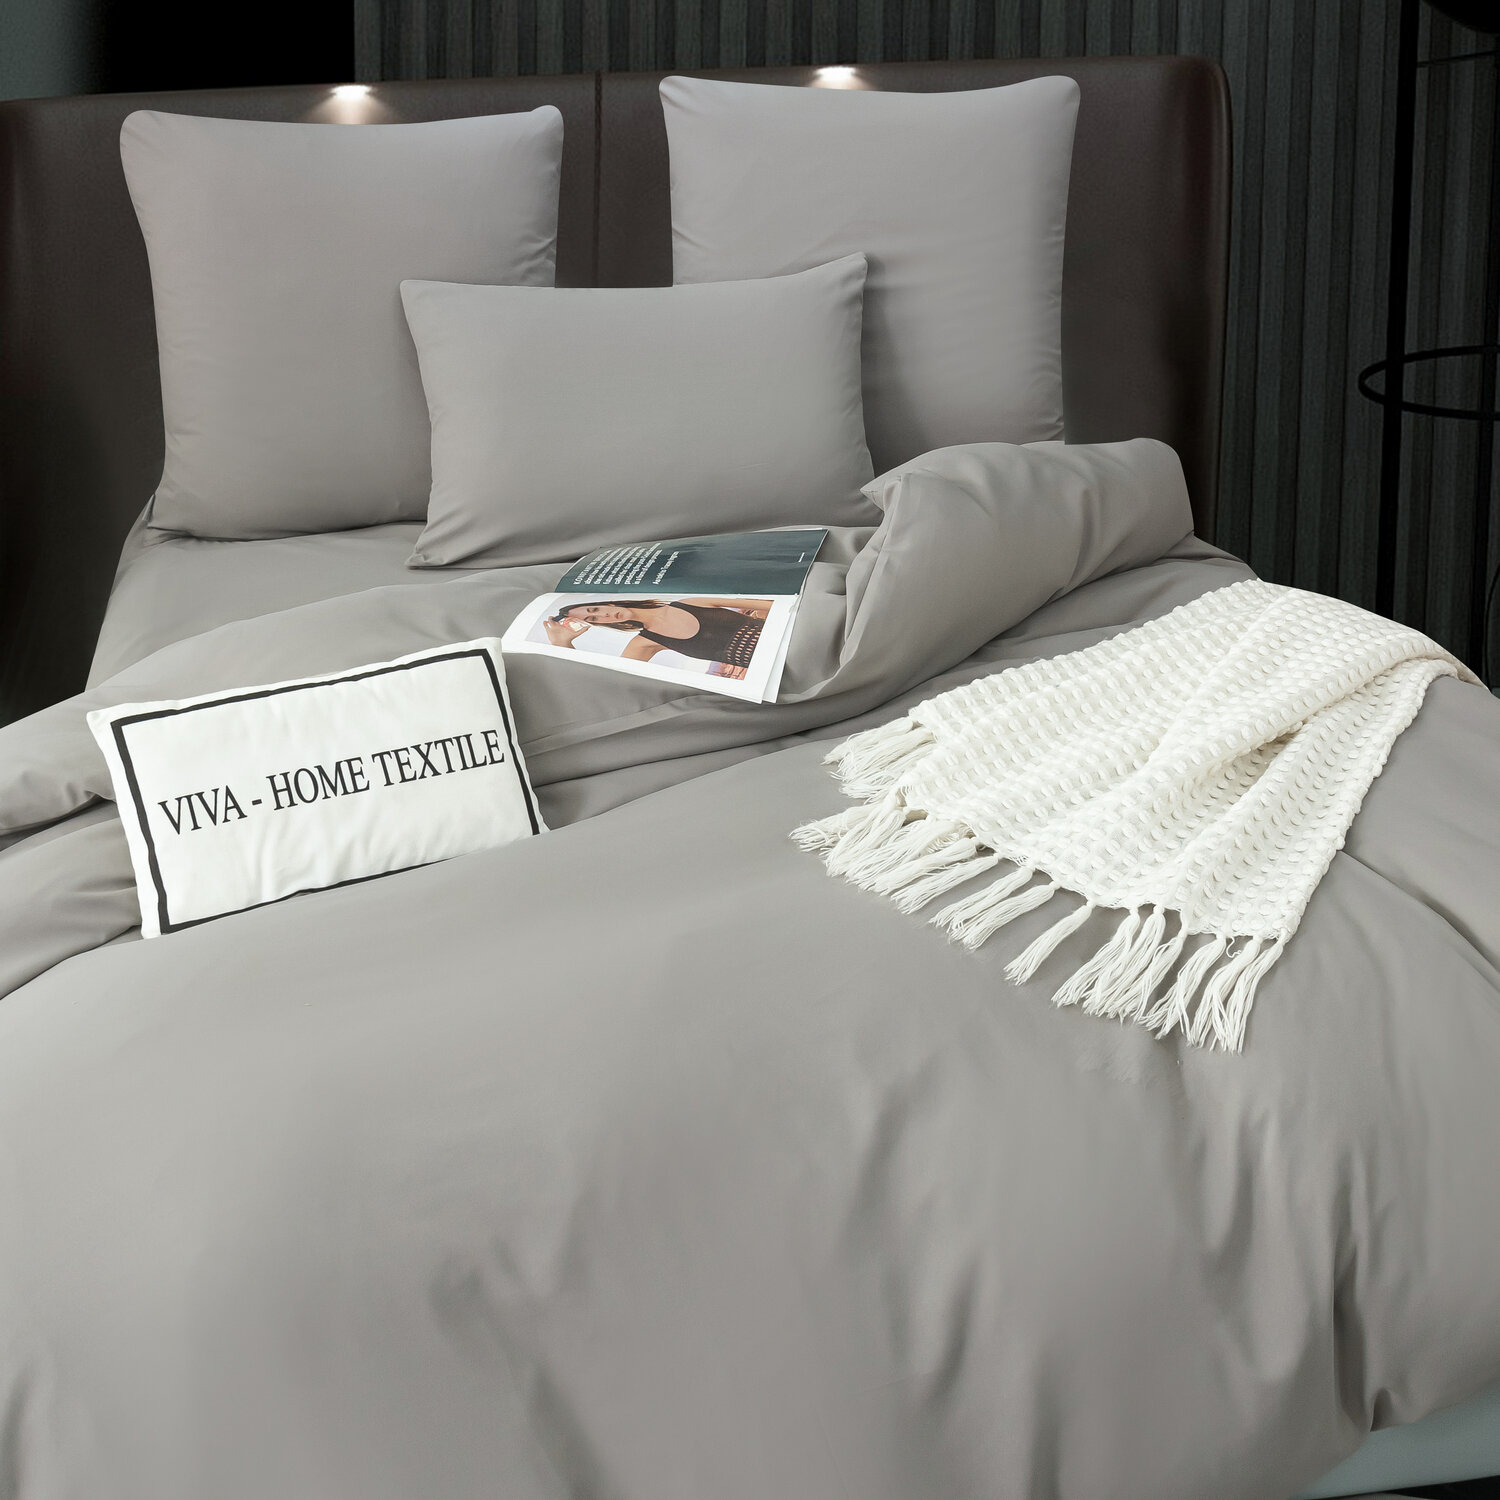 Комплект постельного белья Viva Home Textile Однотонный сатин CS055, 2-спальный, наволочки 50-70